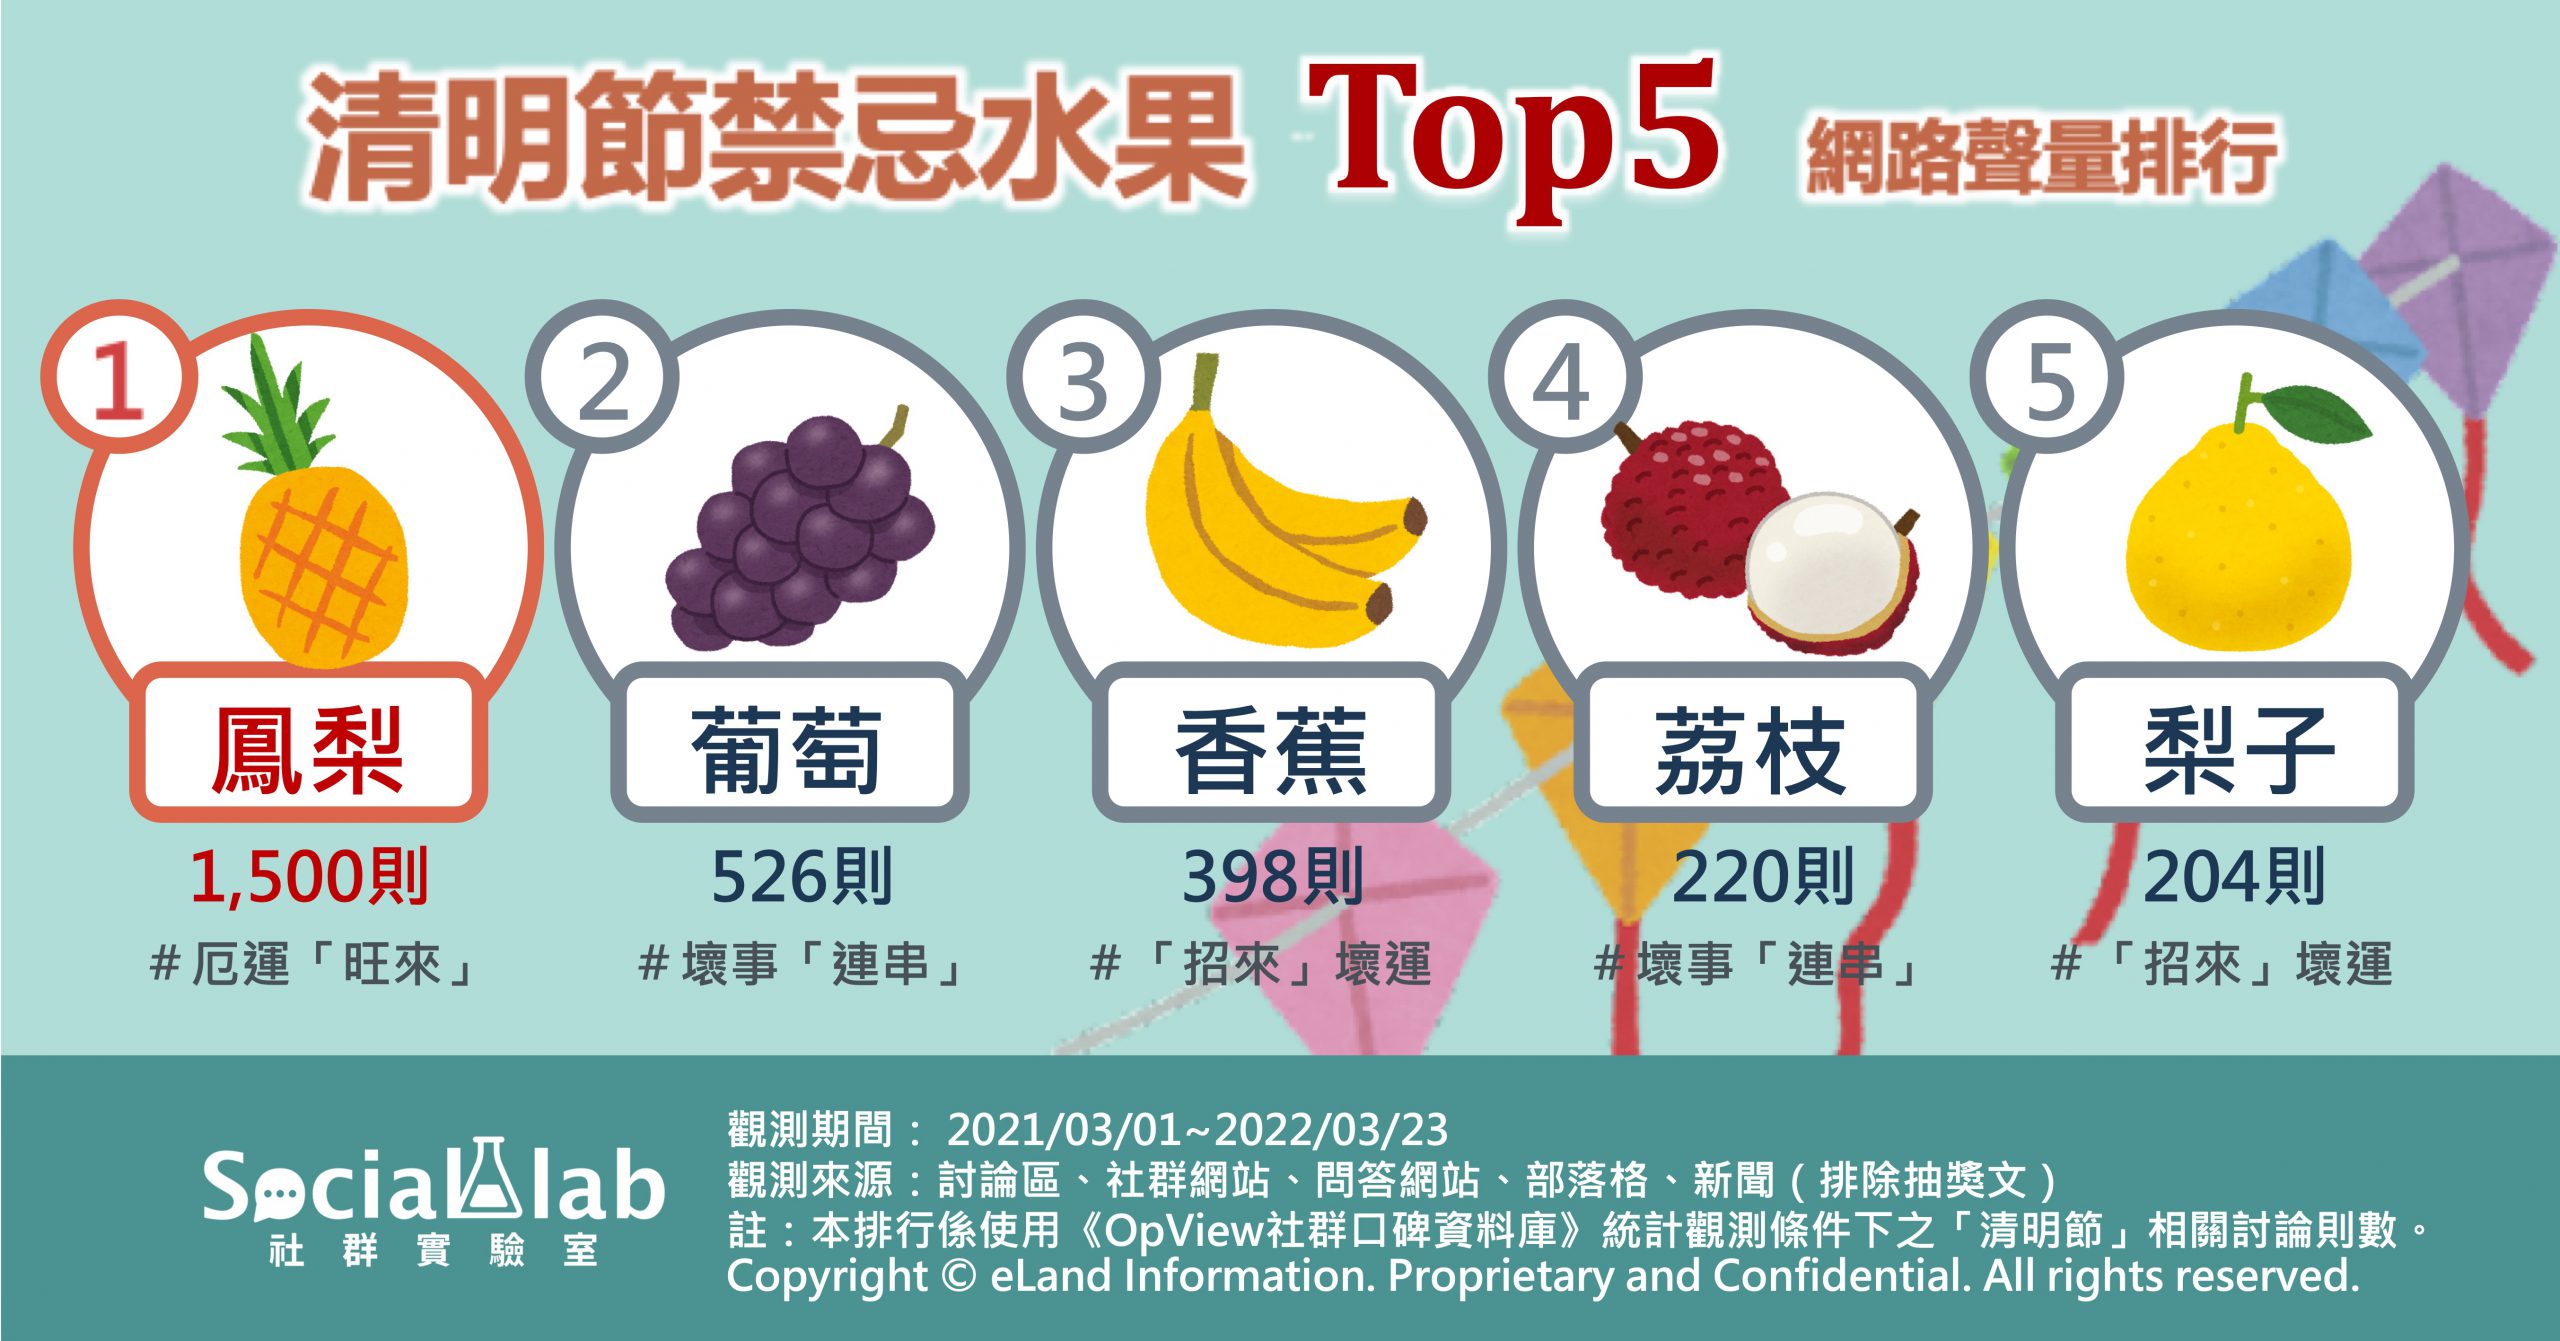 清明節禁忌水果TOP5網路聲量排行